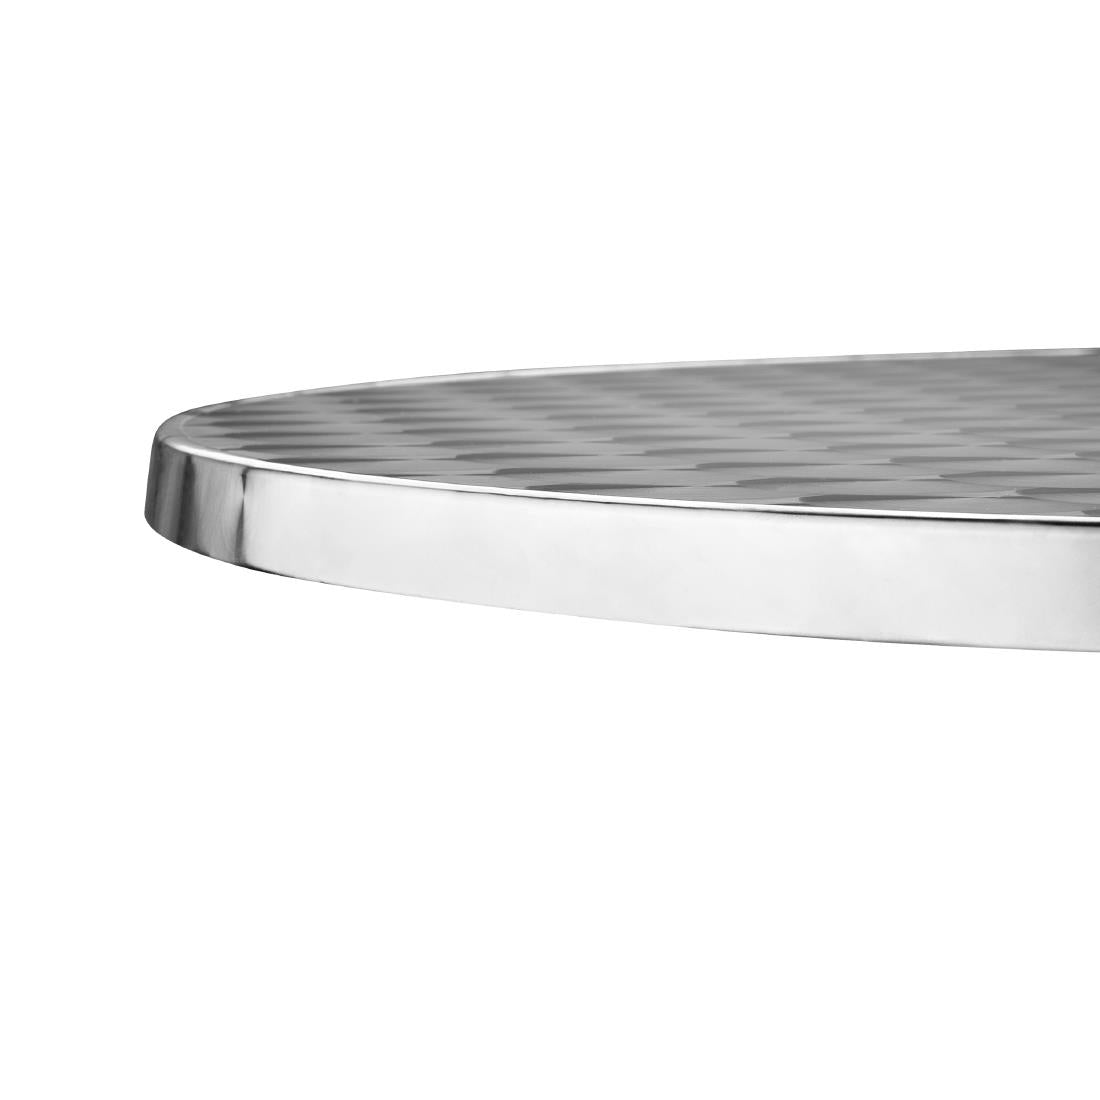 U426 Bolero Steel and Aluminium Round Bistro Table 800mm